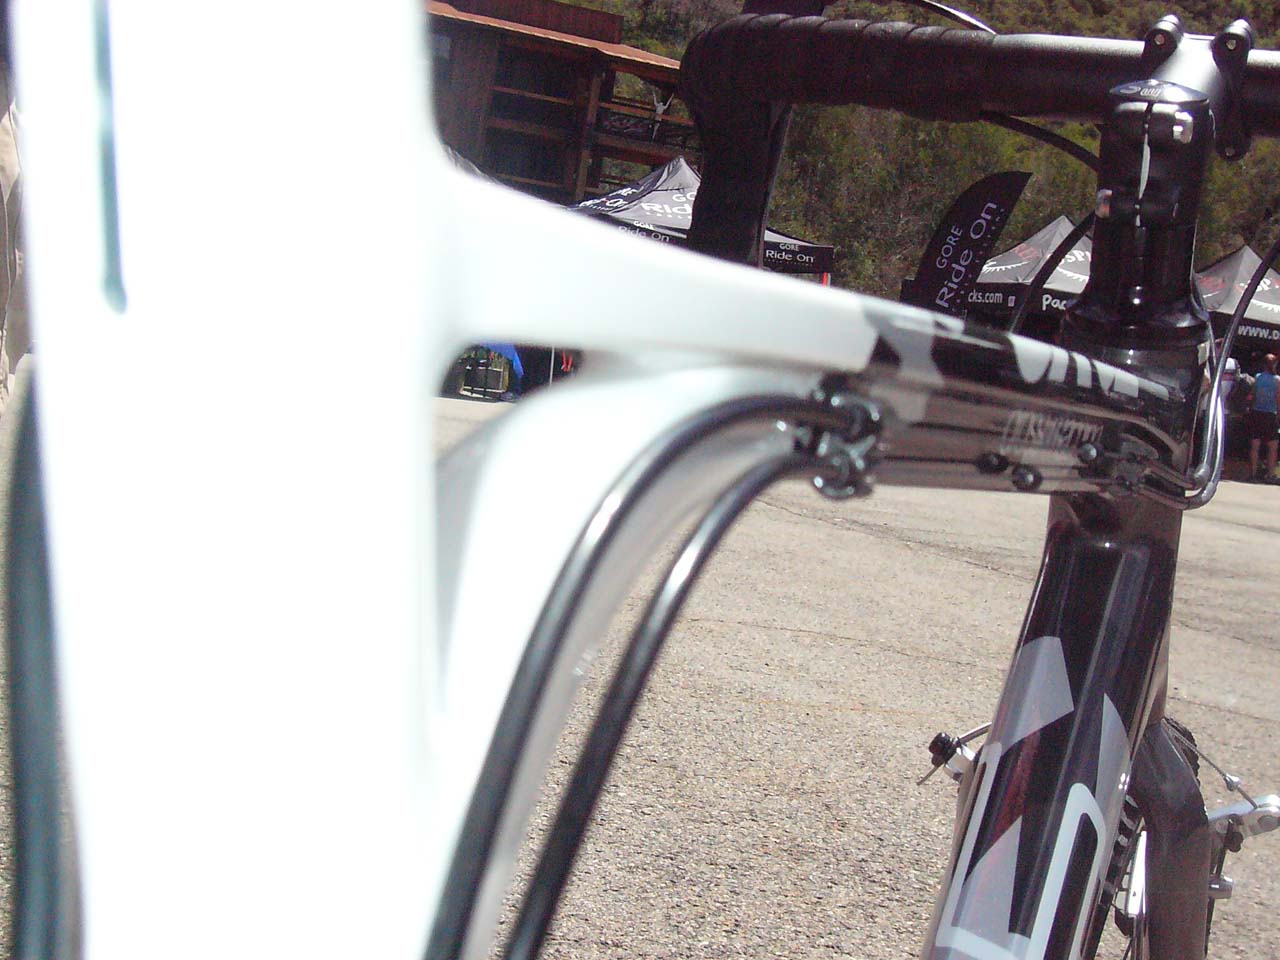   BMC CX02: top tube profile designed for bike perfomance © Ryan Hamilton